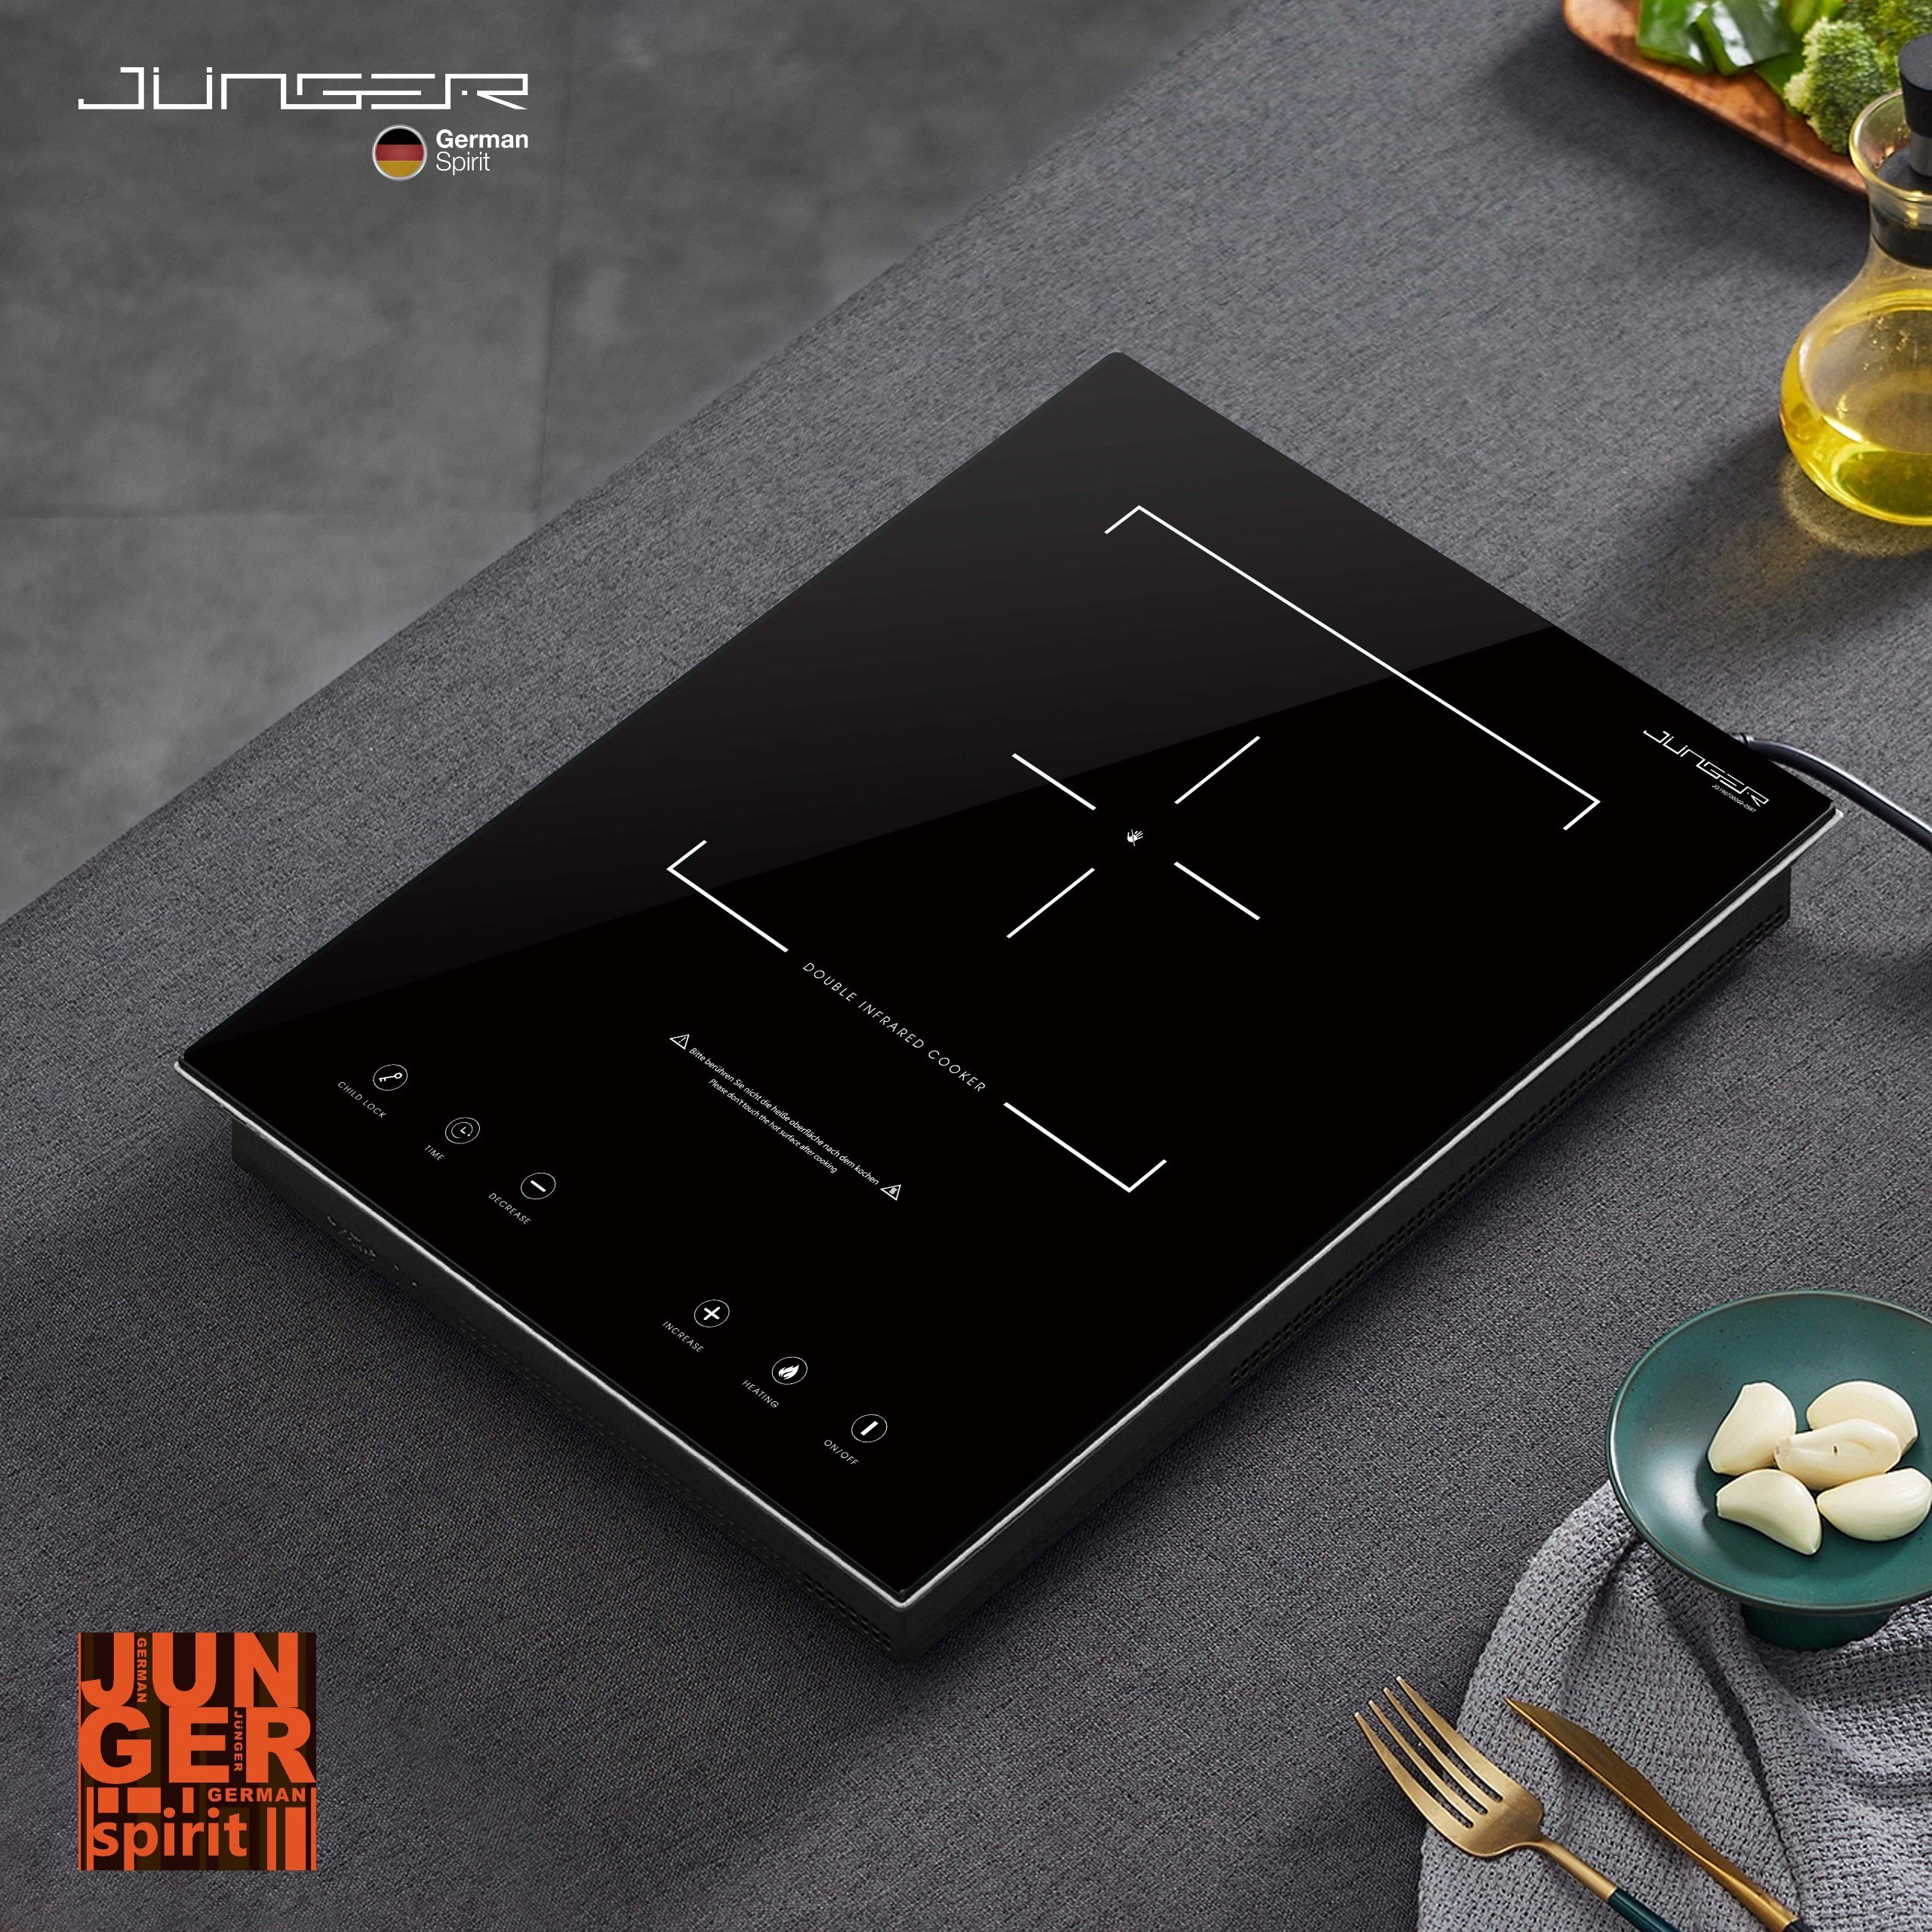 Bếp hồng ngoại đơn Junger MT-92 sở hữu thiết kế hiện đại chuẩn đẳng cấp Đức nâng tầm không gian sống.